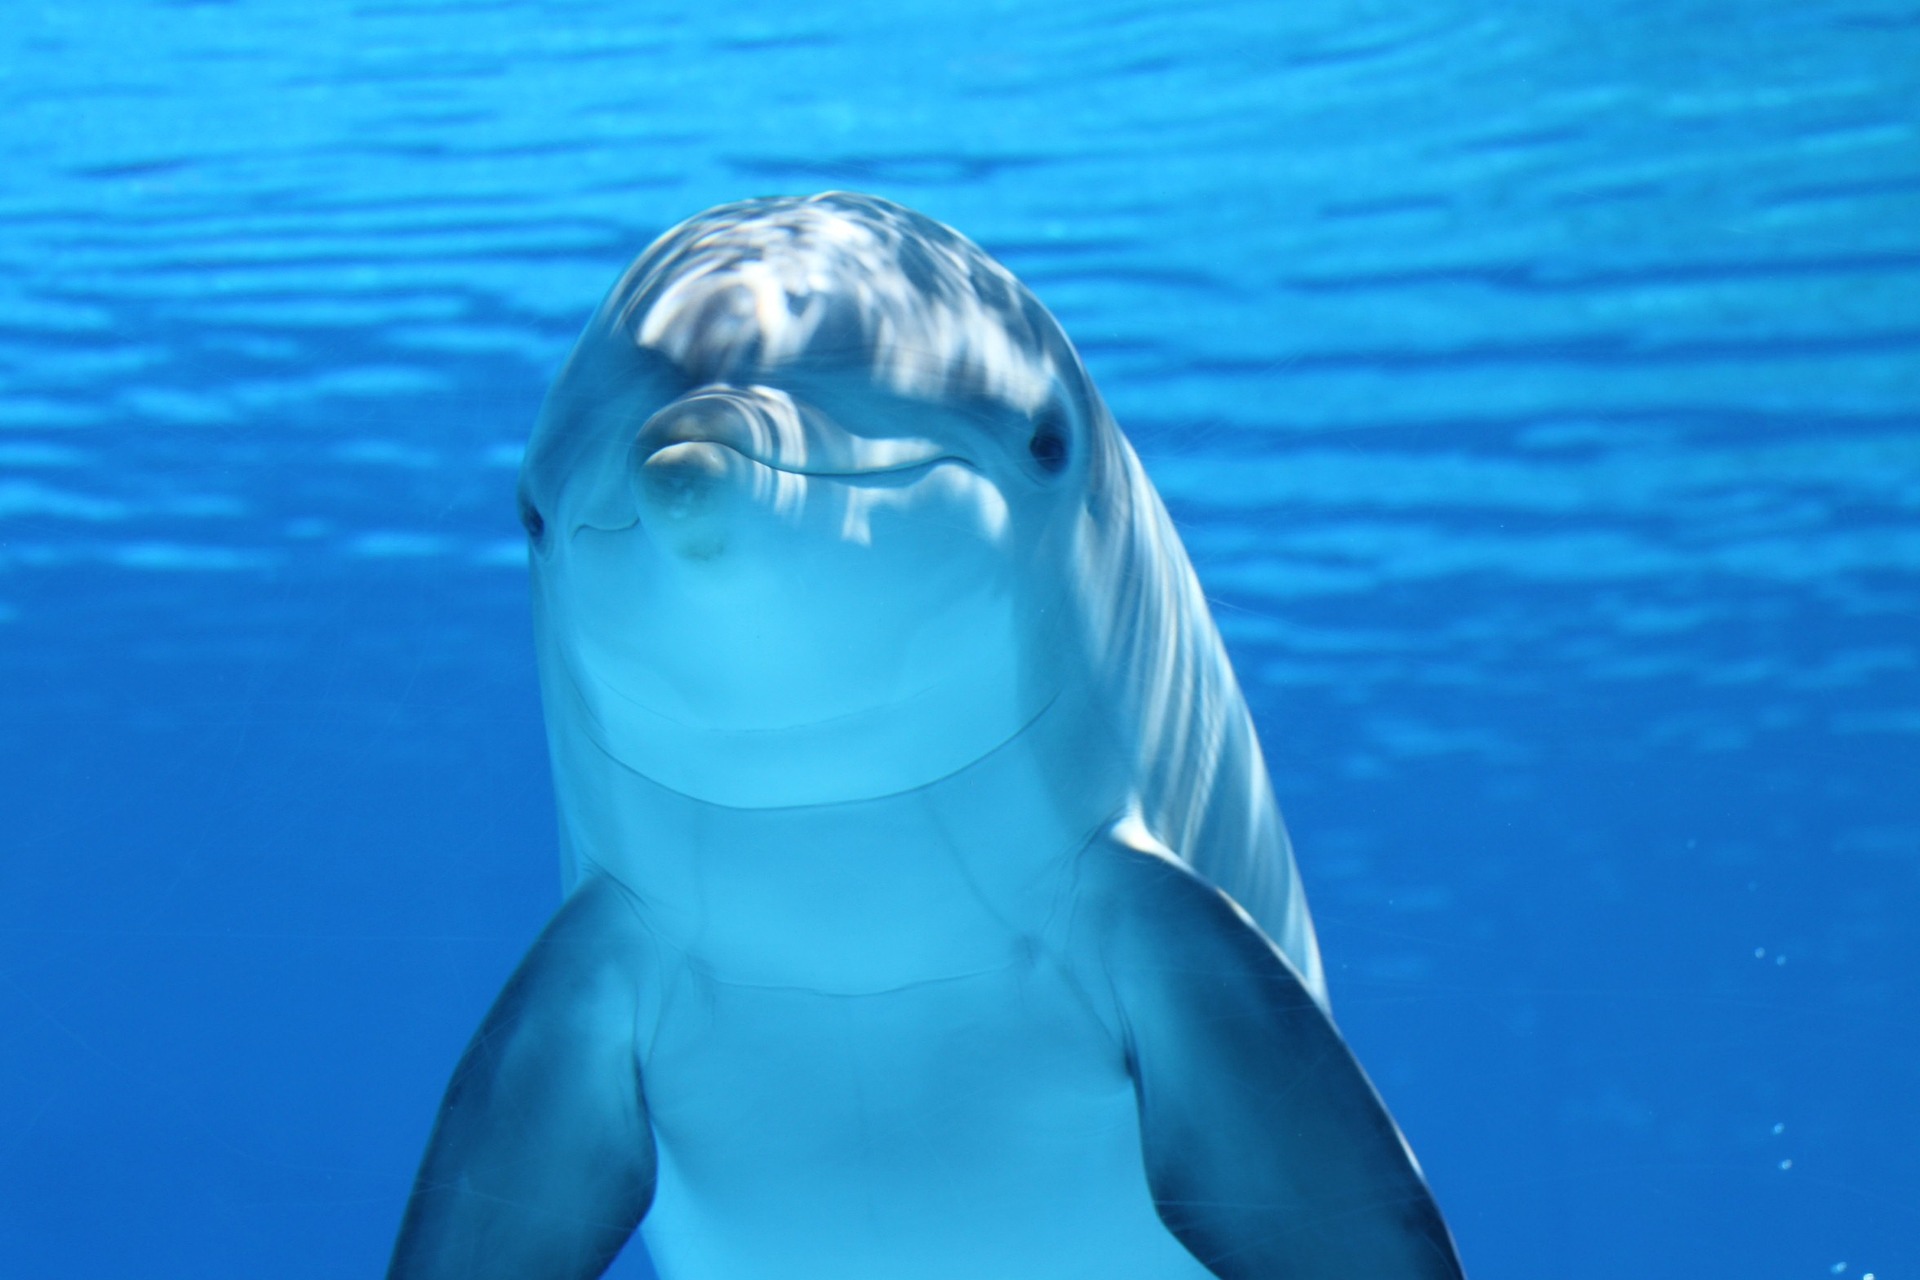 Nemcsak az orkák, a delfinek között is terjed egy új szokás, ami bajt hozhat a fejükre